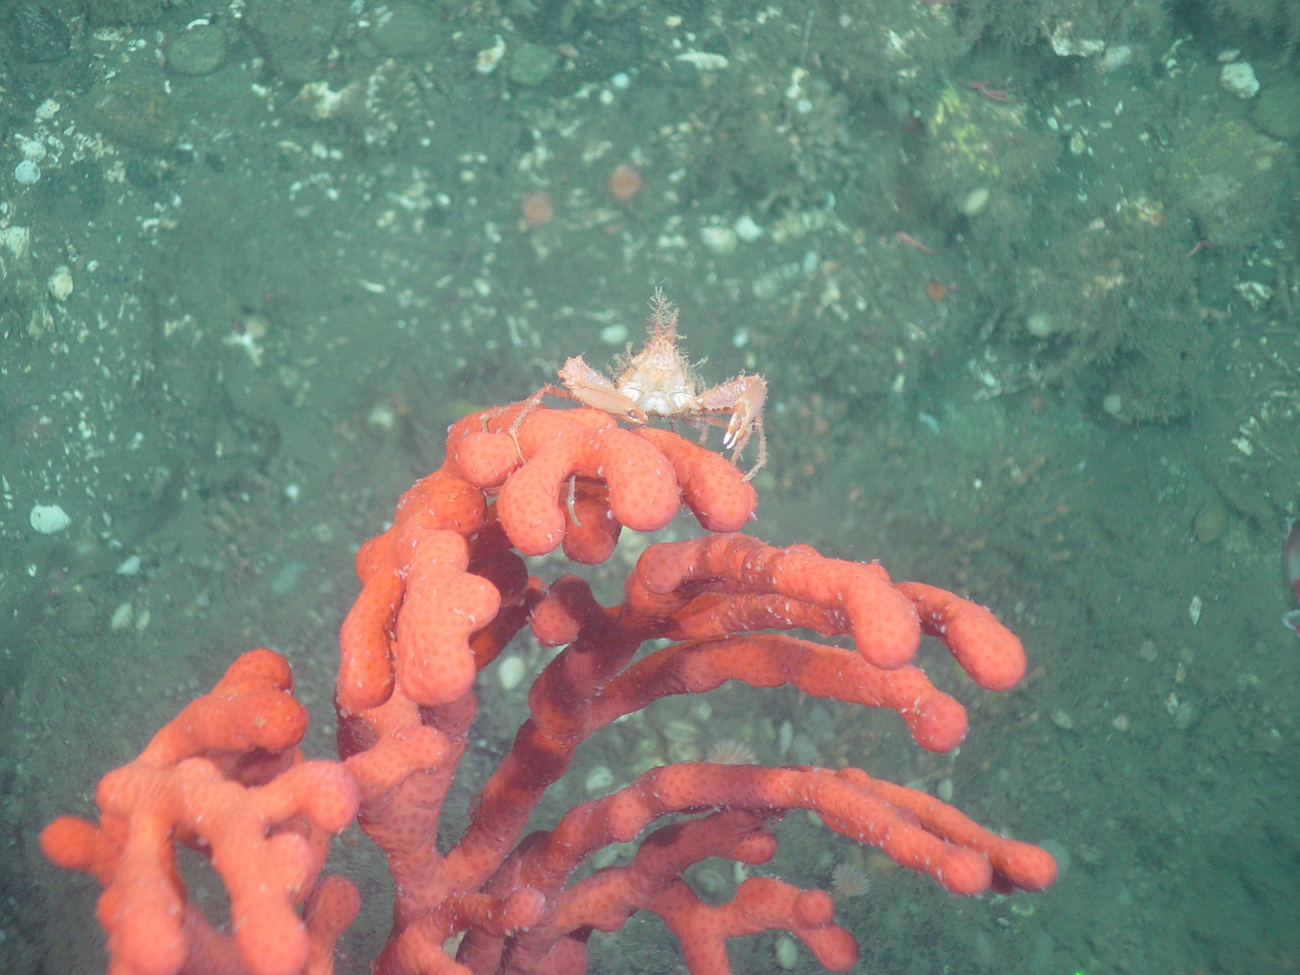 Deep sea coral (Paragorgia arborea pacifica) with small crab